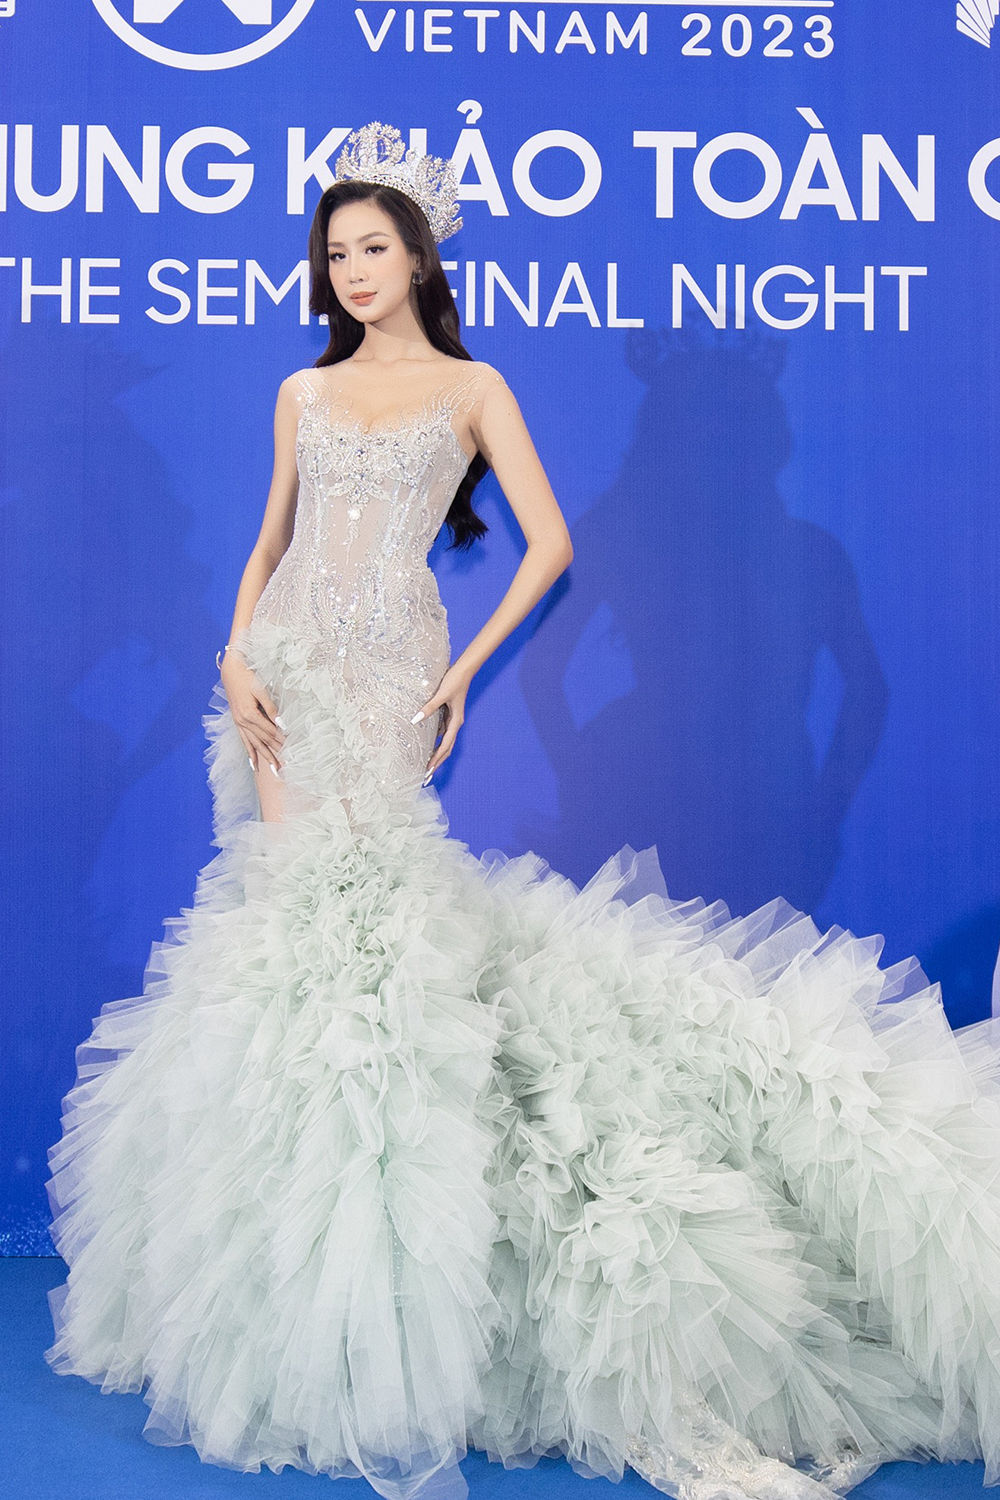 Harper's Bazaar_Thảm đỏ chung khảo Miss World Vietnam 2023_06